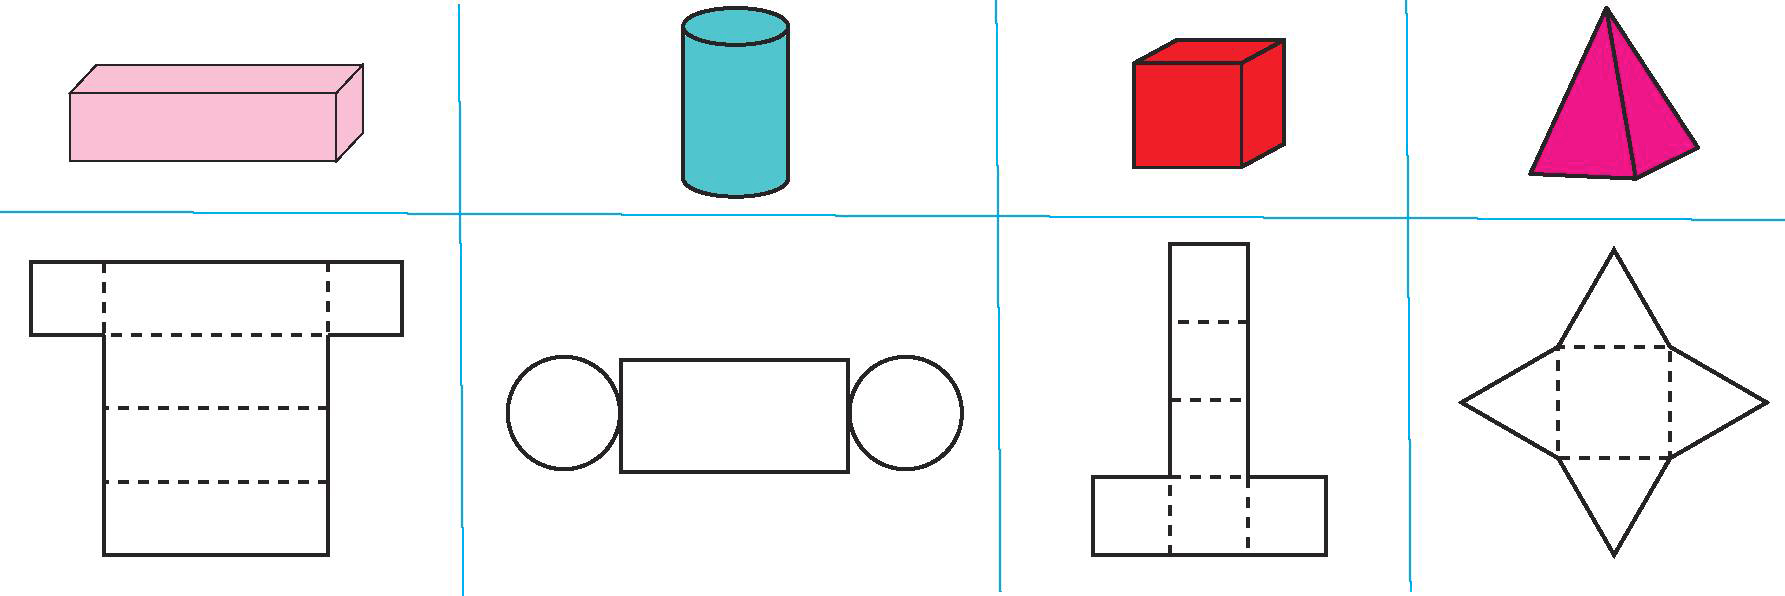 Как сделать цилиндр из бумаги: пошаговая инструкция по изготовлению фигуры и шляпы-цилиндра